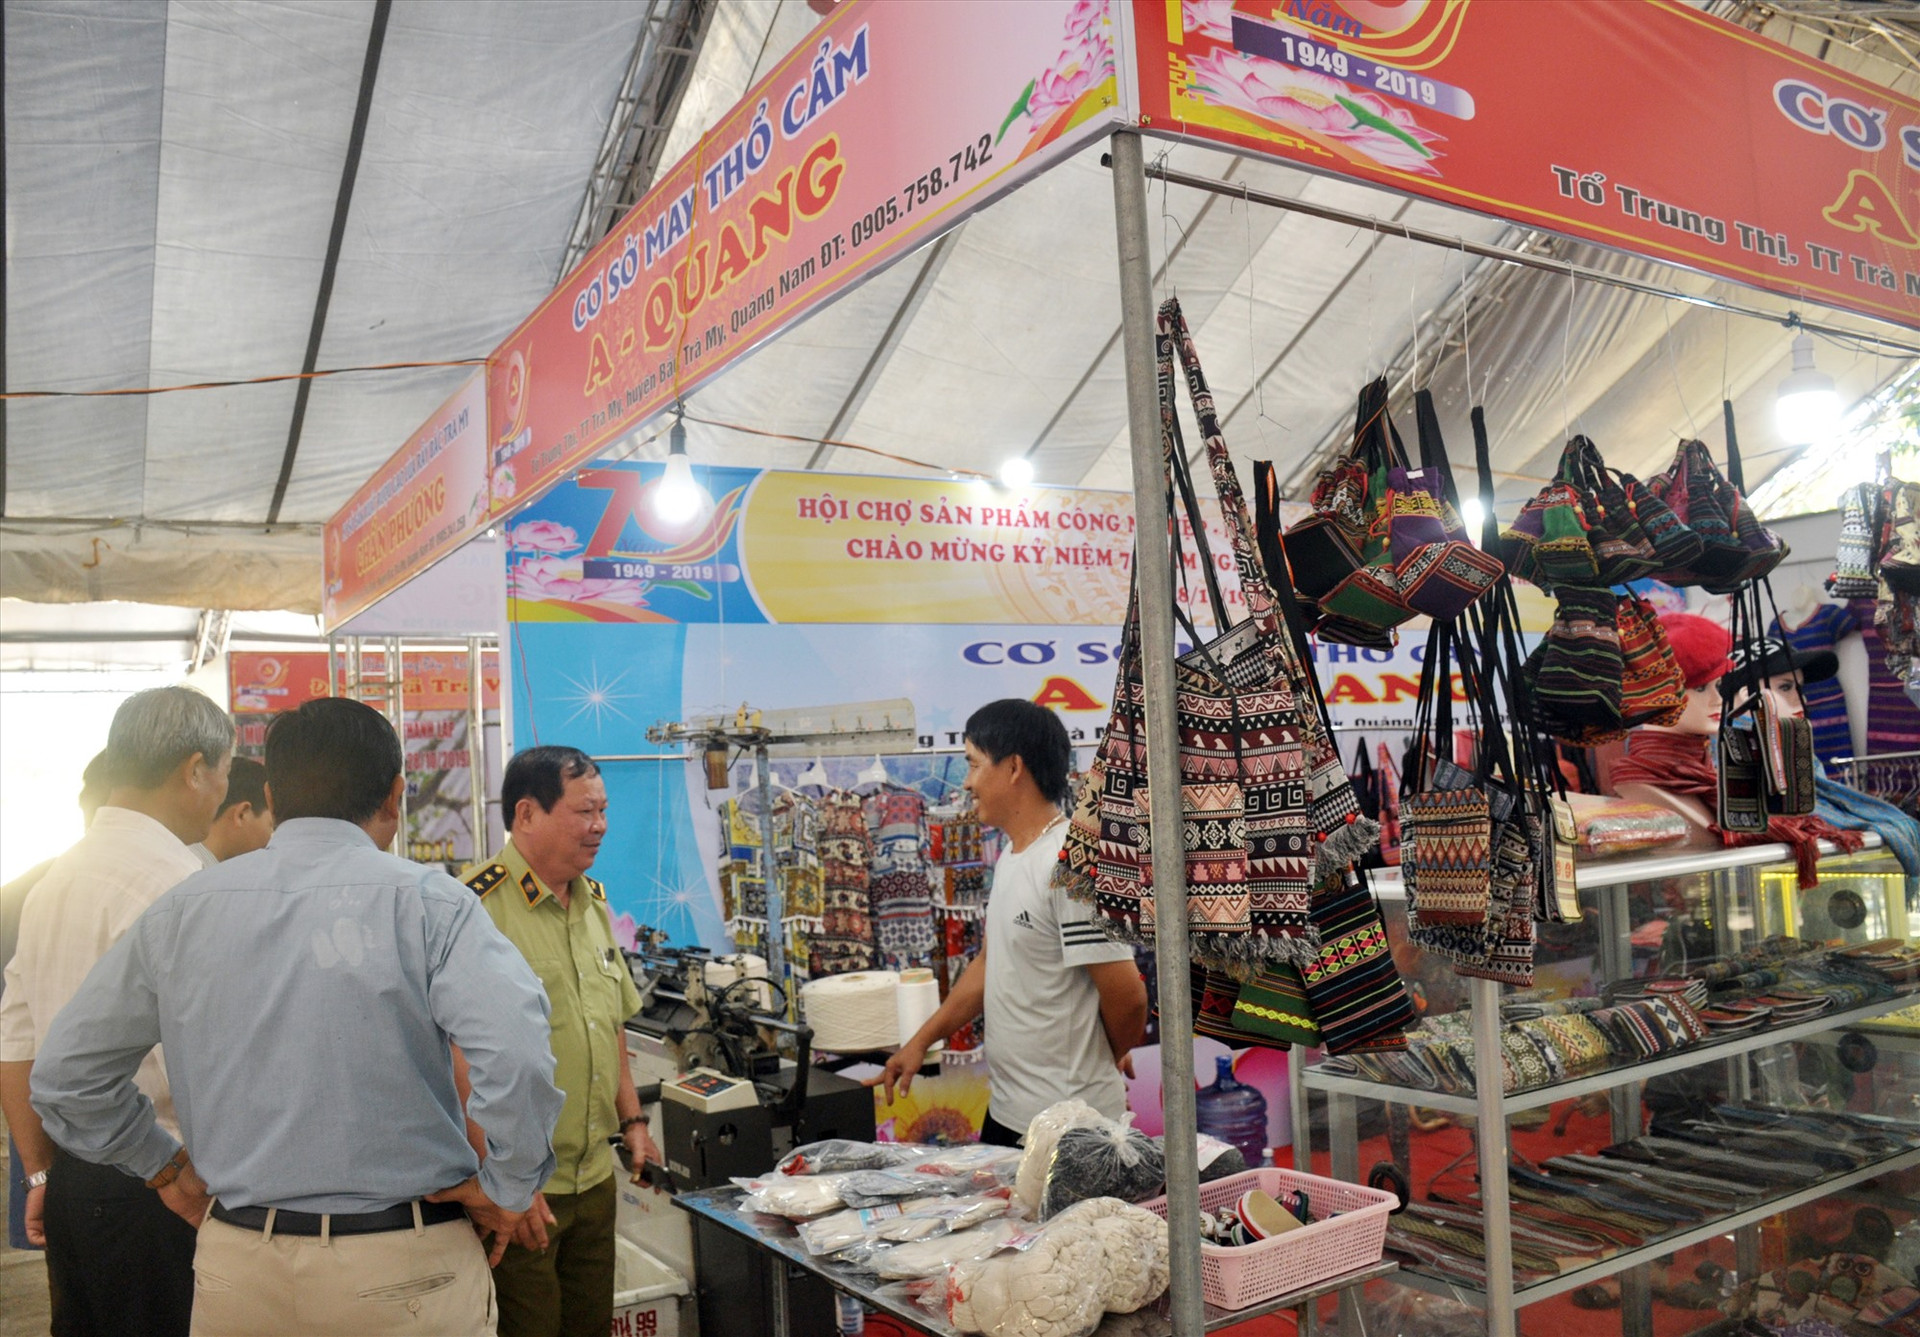 Cuối năm 2019, UBND huyện Bắc Trà My tổ chức hội nghị quảng bá các sản phẩm đặt trưng của địa phương đến với du khách trong và ngoài huyện. Ảnh: N.Đ